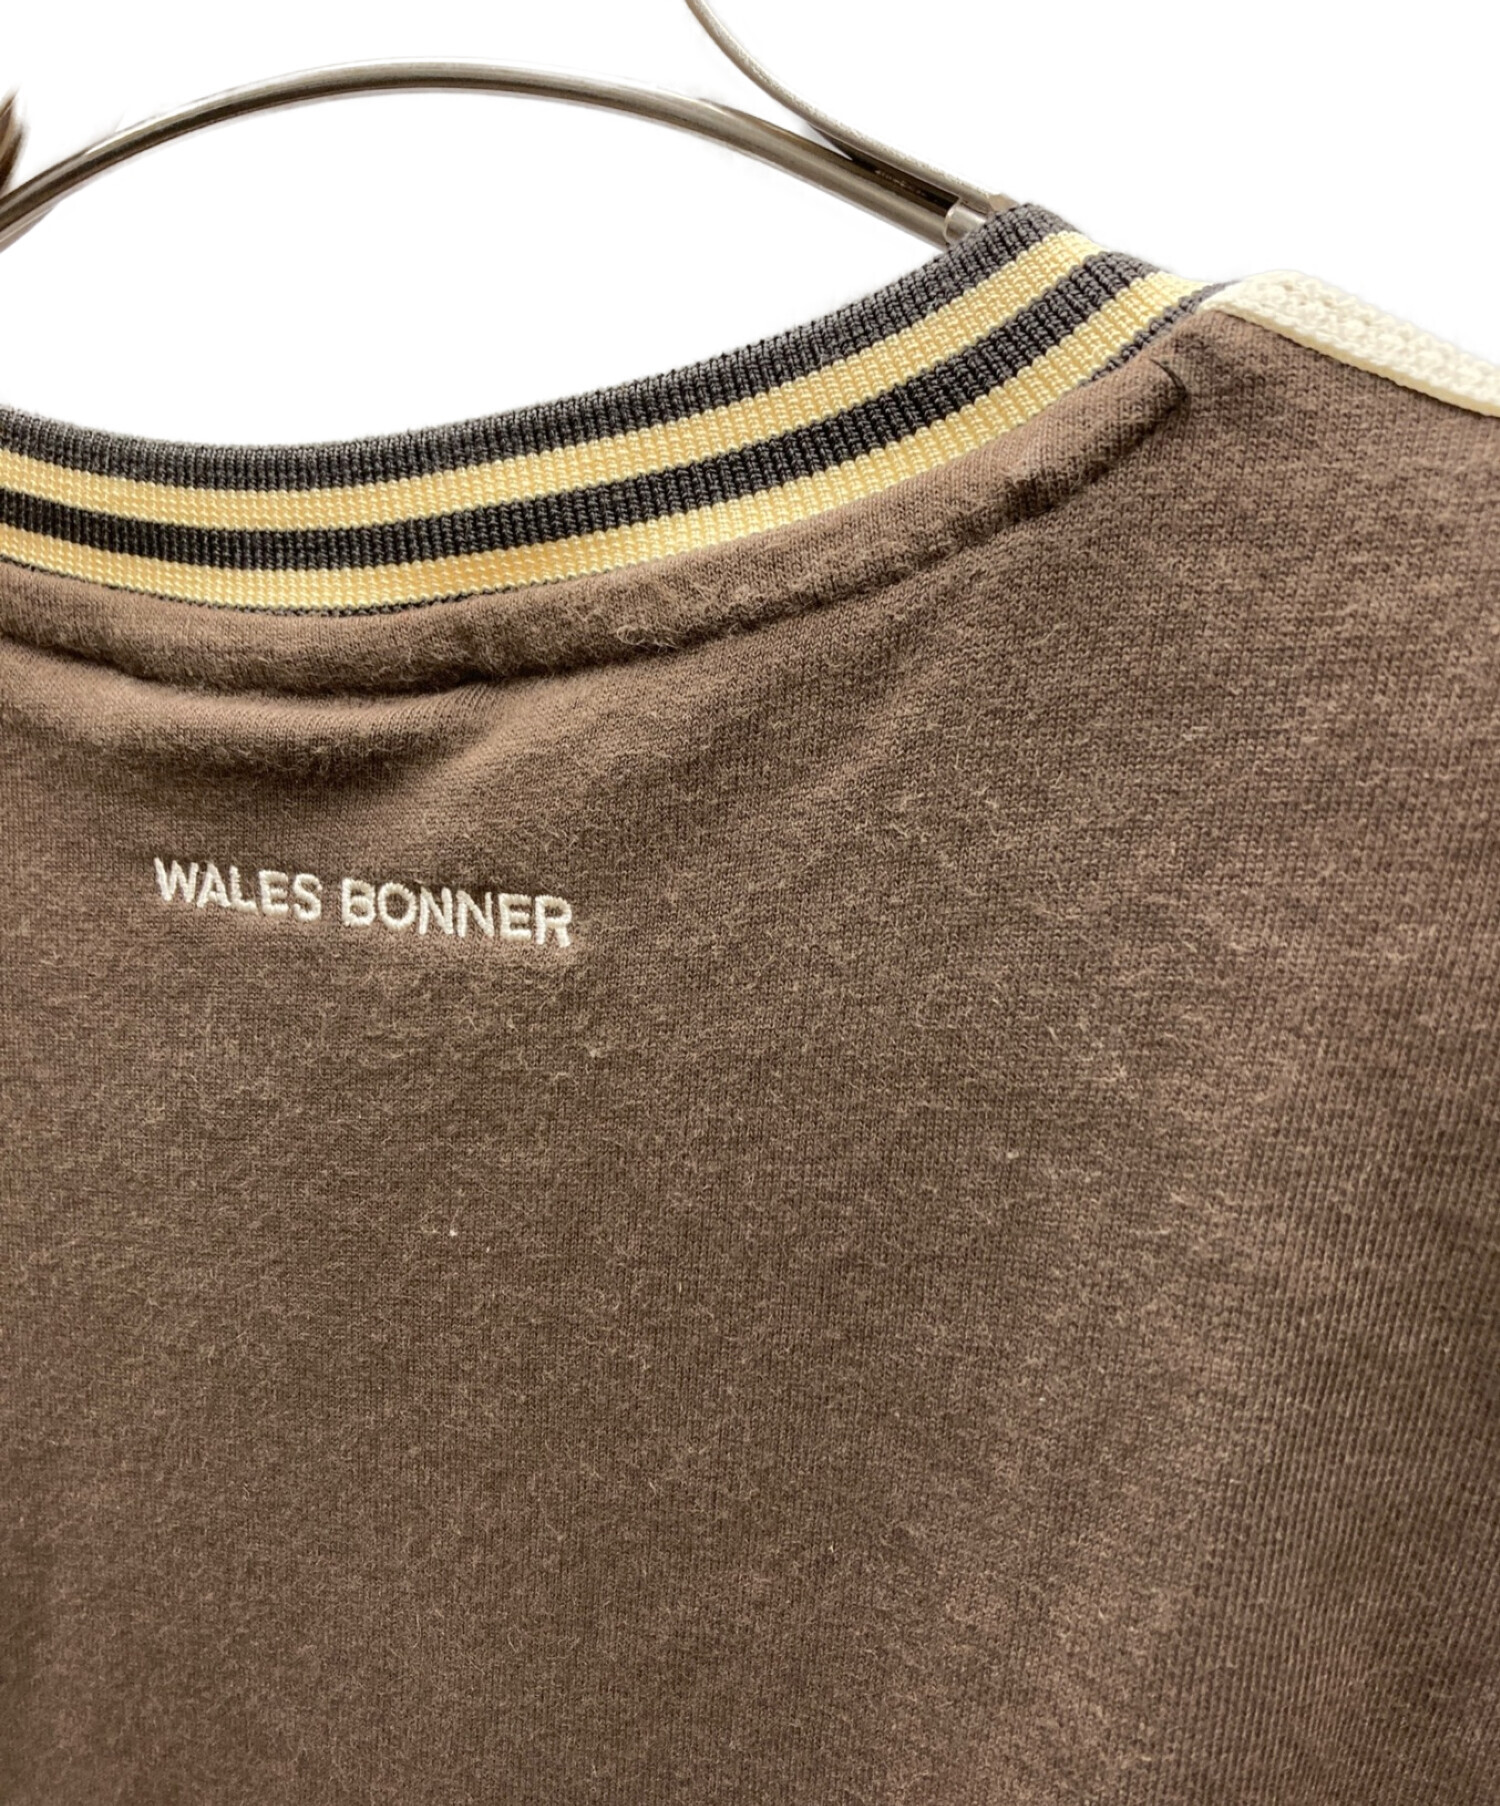 adidas (アディダス) WALES BONNER (ウェールズボナー) リンガーTシャツ ブラウン サイズ:Ｍ